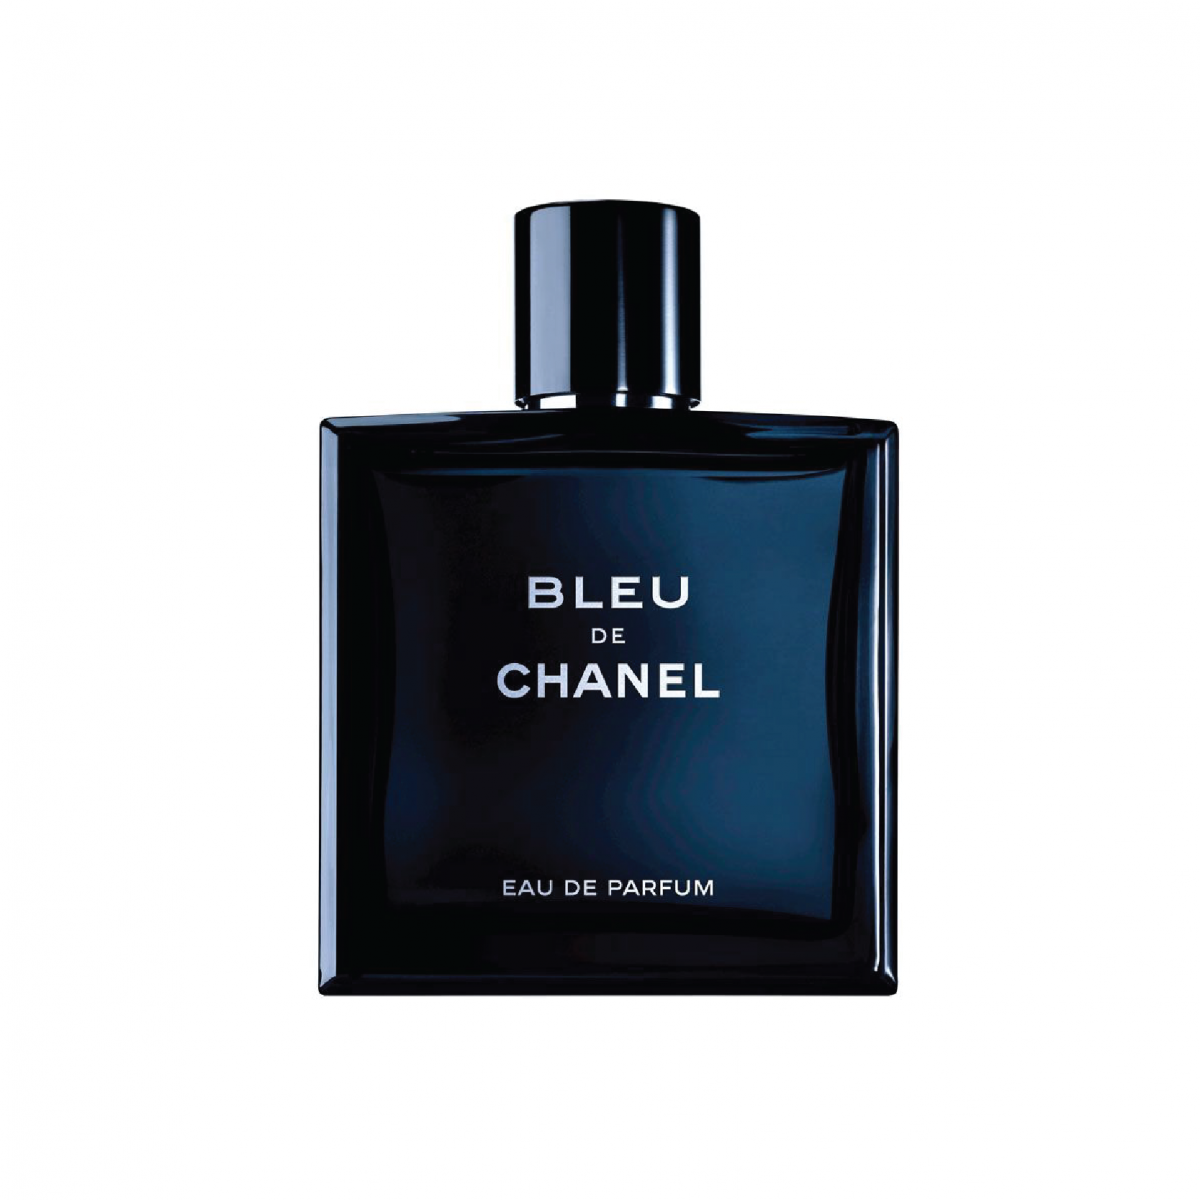 Mua Nước Hoa Chanel Bleu EDT 100ml cho Nam chính hãng Pháp Giá tốt